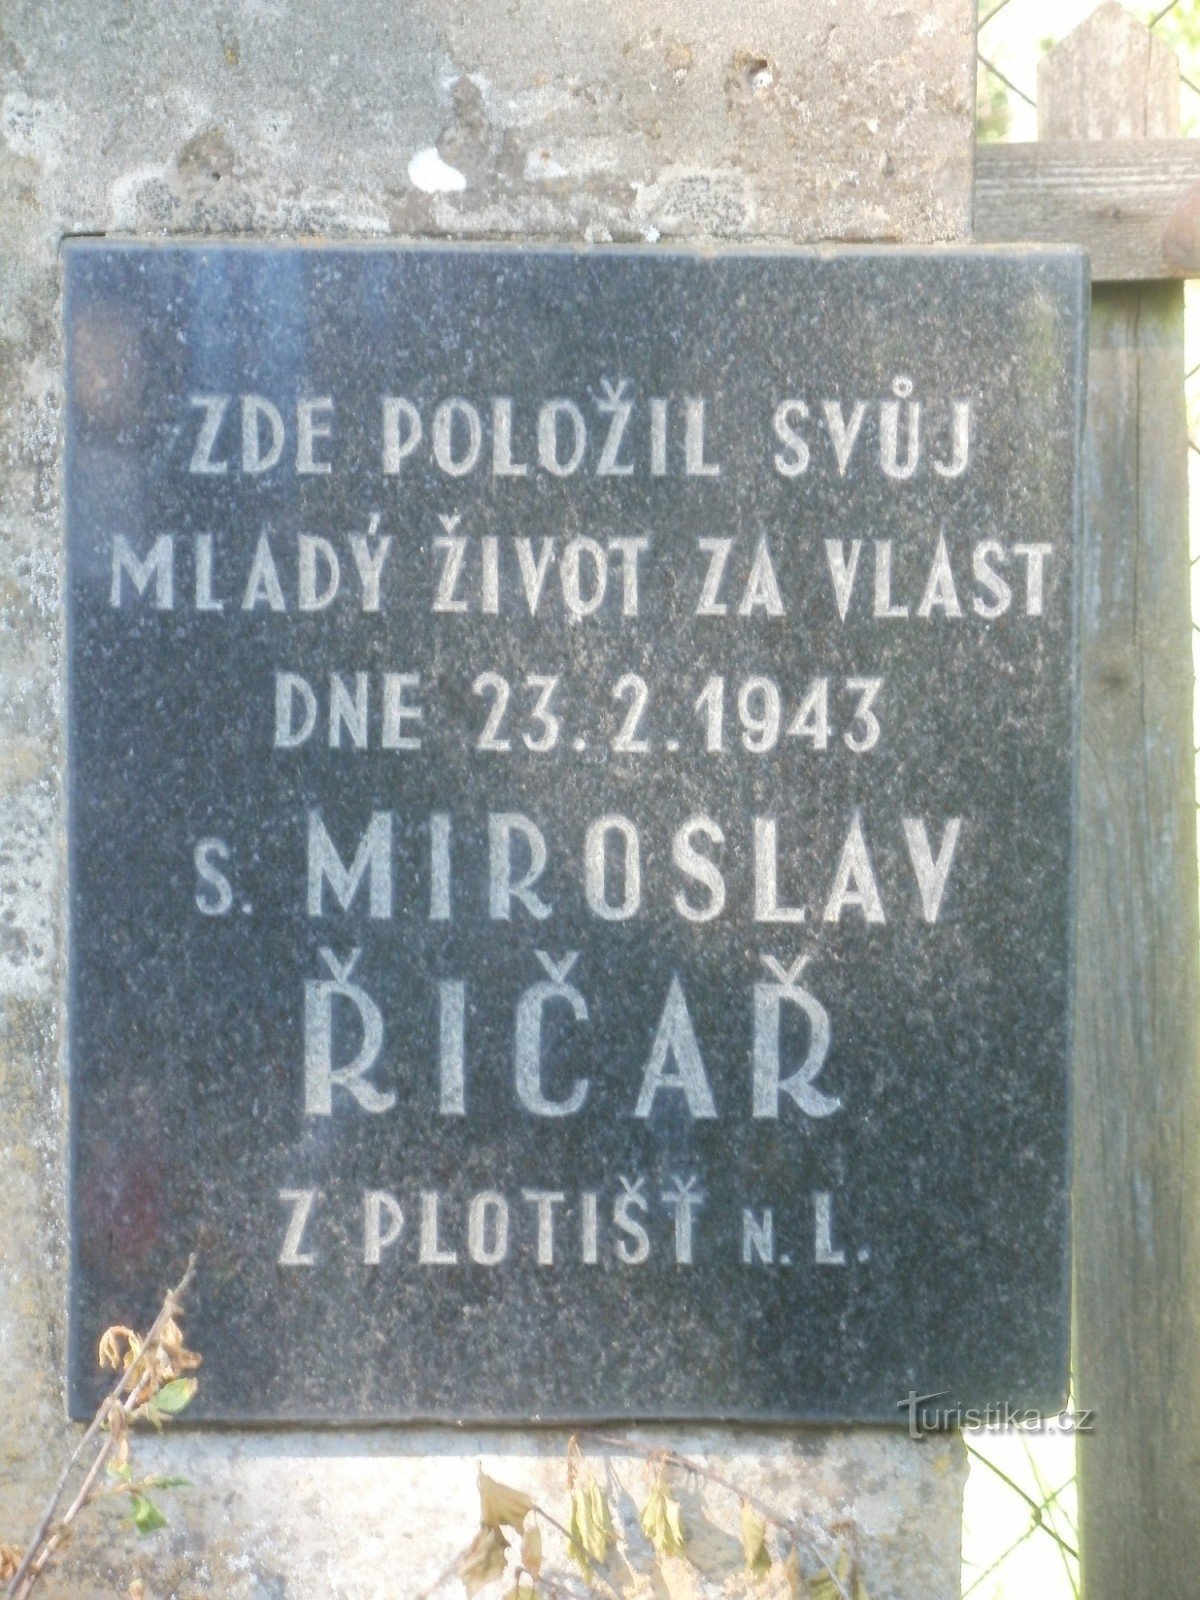 monumento al Sr. Říčař cerca de Týniště nad Orlicí